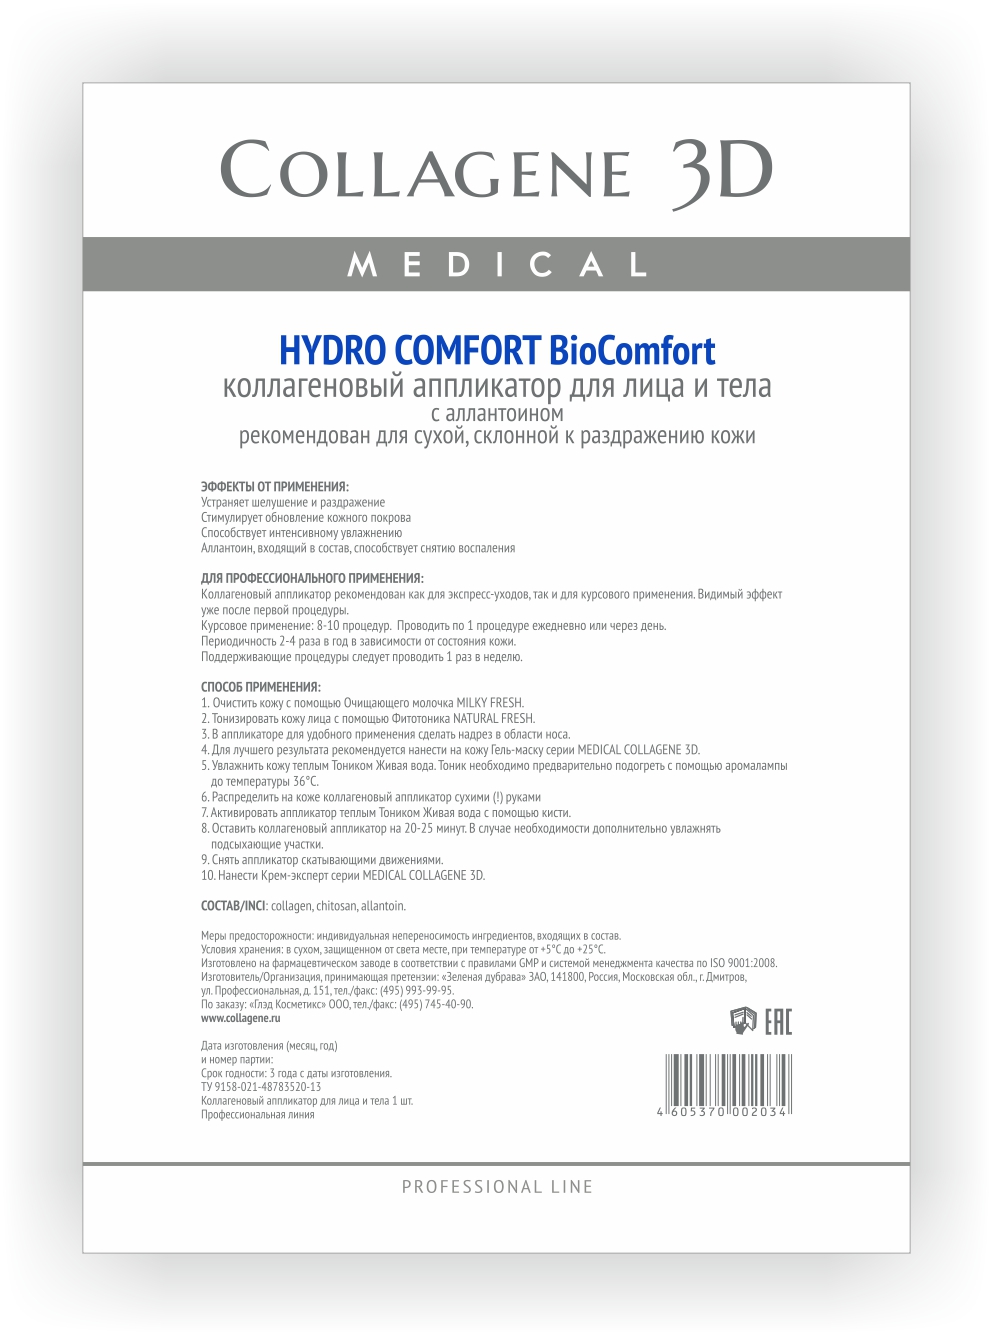 MEDICAL COLLAGENE 3D Аппликатор коллагеновый с аллантоином для лица и тела / Hydro Comfort А4 1127003 - фото 1